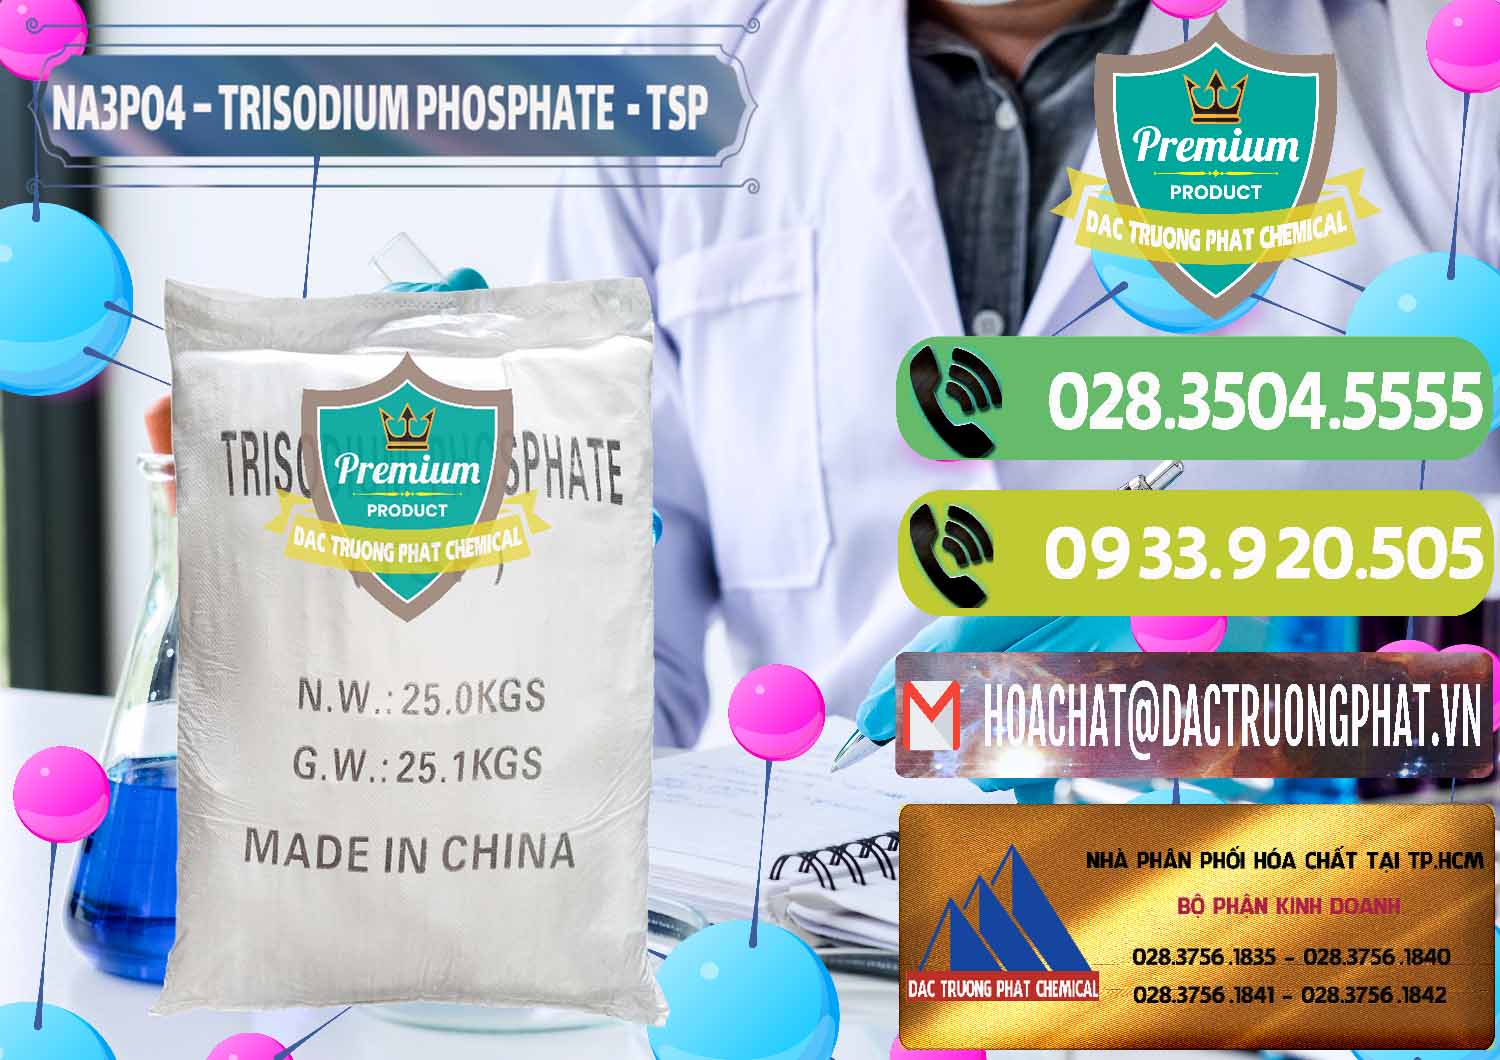 Cty bán - cung ứng Na3PO4 – Trisodium Phosphate Trung Quốc China TSP - 0103 - Đơn vị chuyên bán ( cung cấp ) hóa chất tại TP.HCM - hoachatmientay.vn